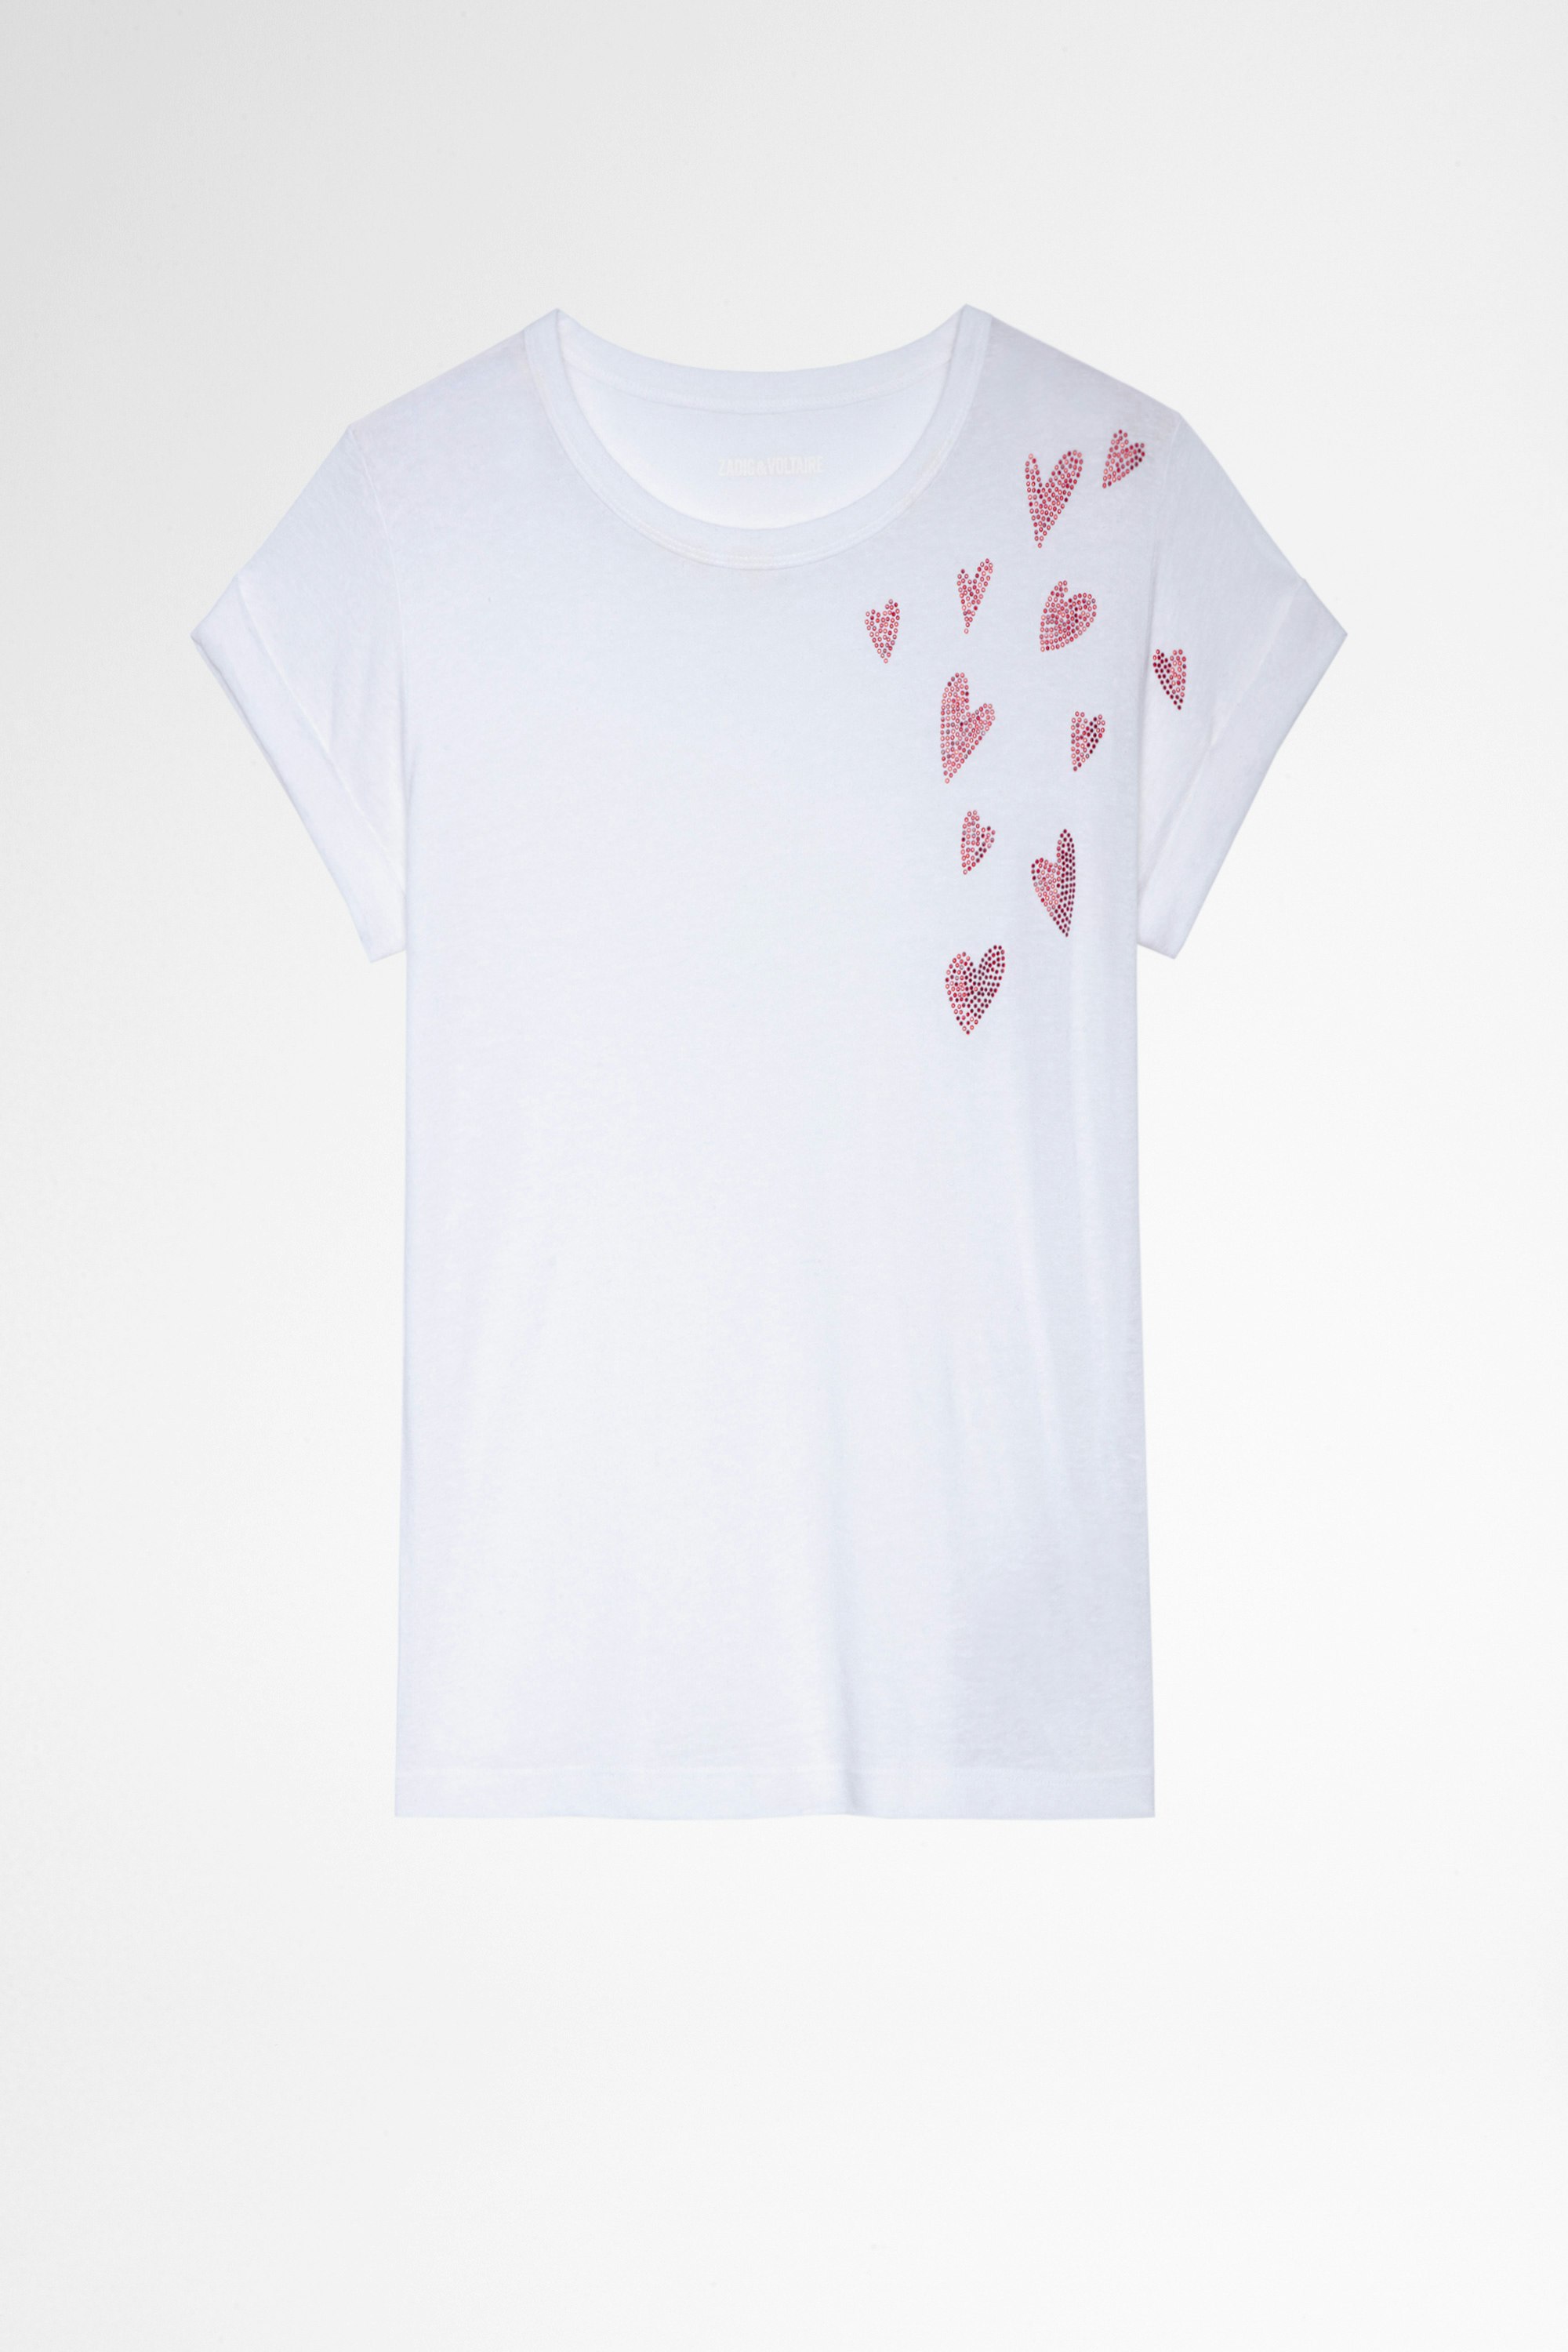 T-shirt Anya heart T-shirt bianca con cuori di strass, donna